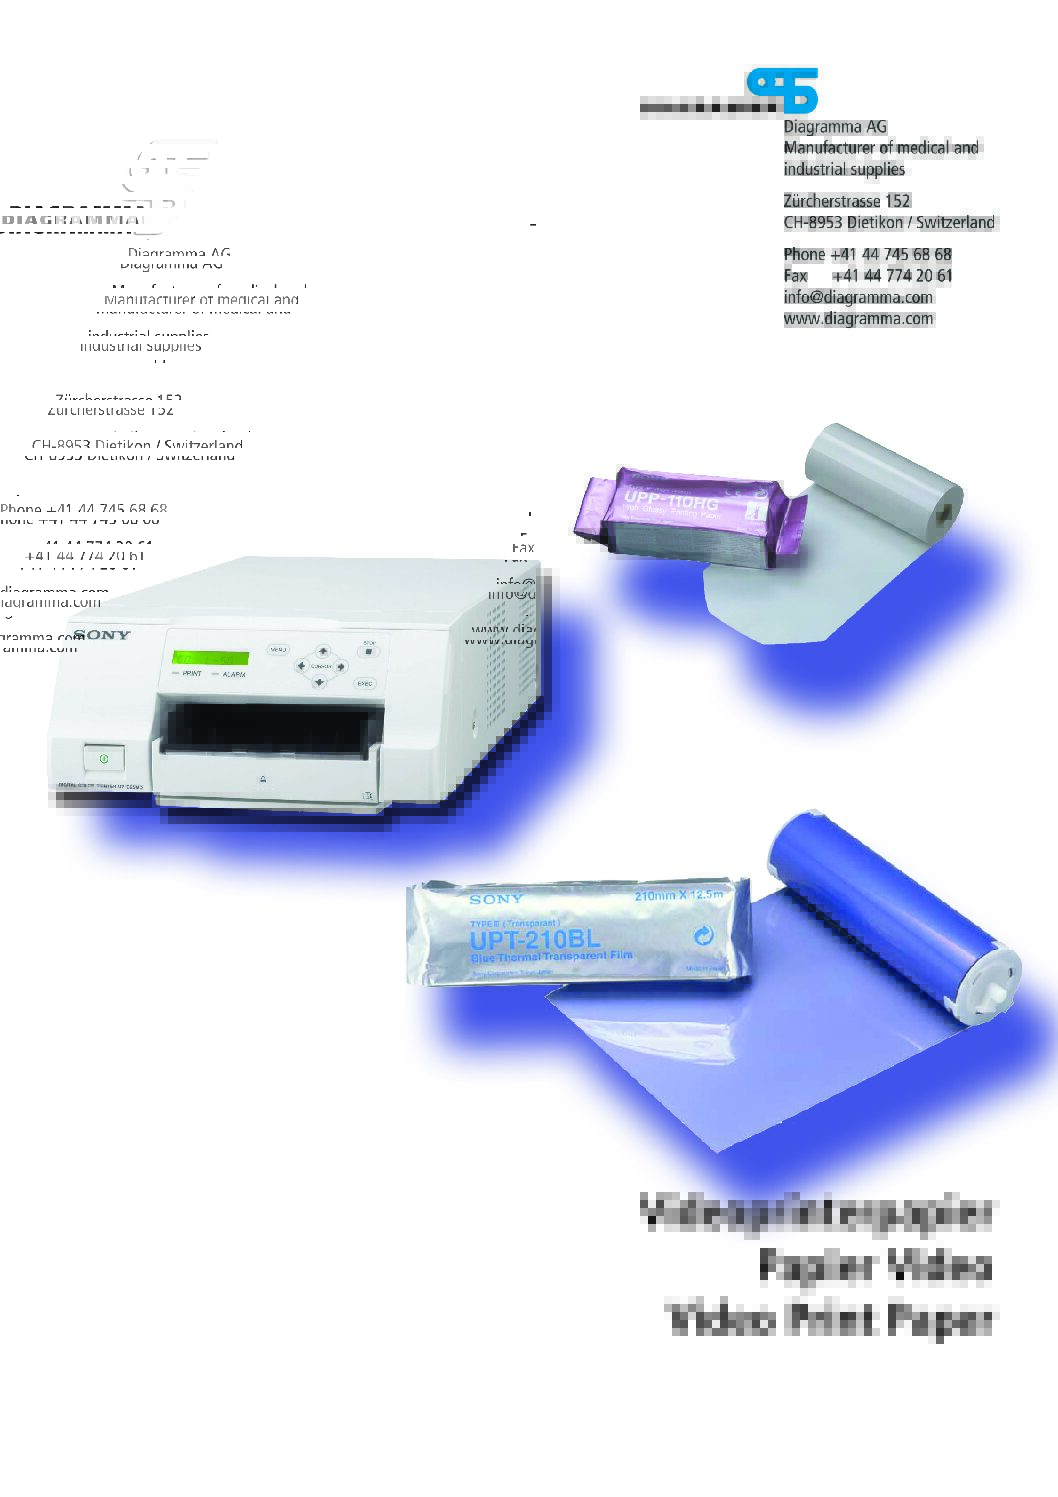 Videoprinterpapier pdf